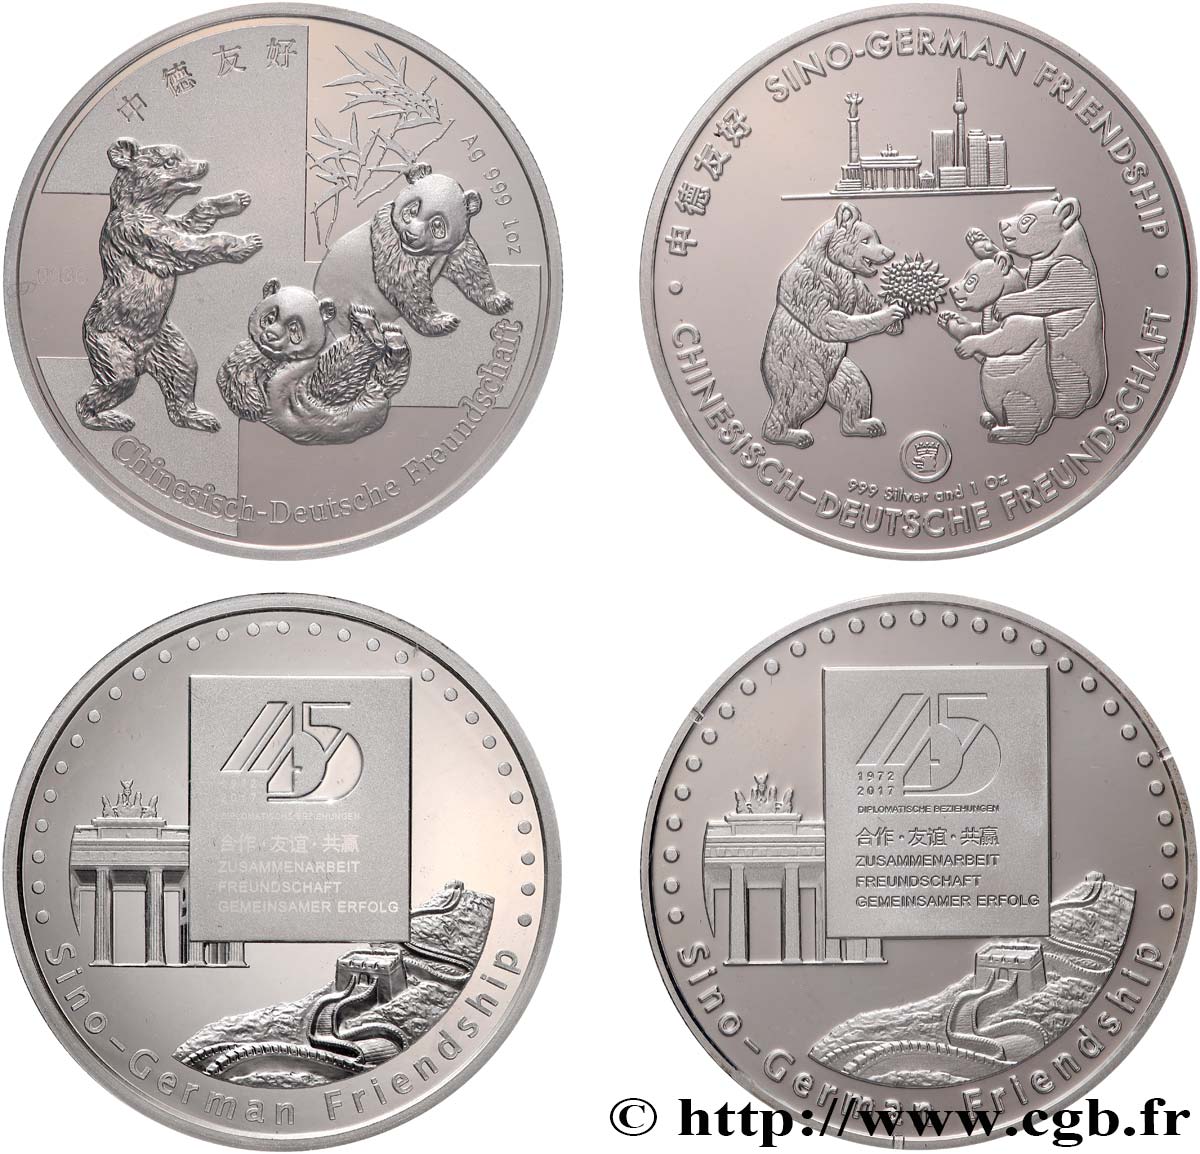 DEUTSCHLAND Médailles commémoratives, 45e anniversaire de l’amitié sino-allemande ST